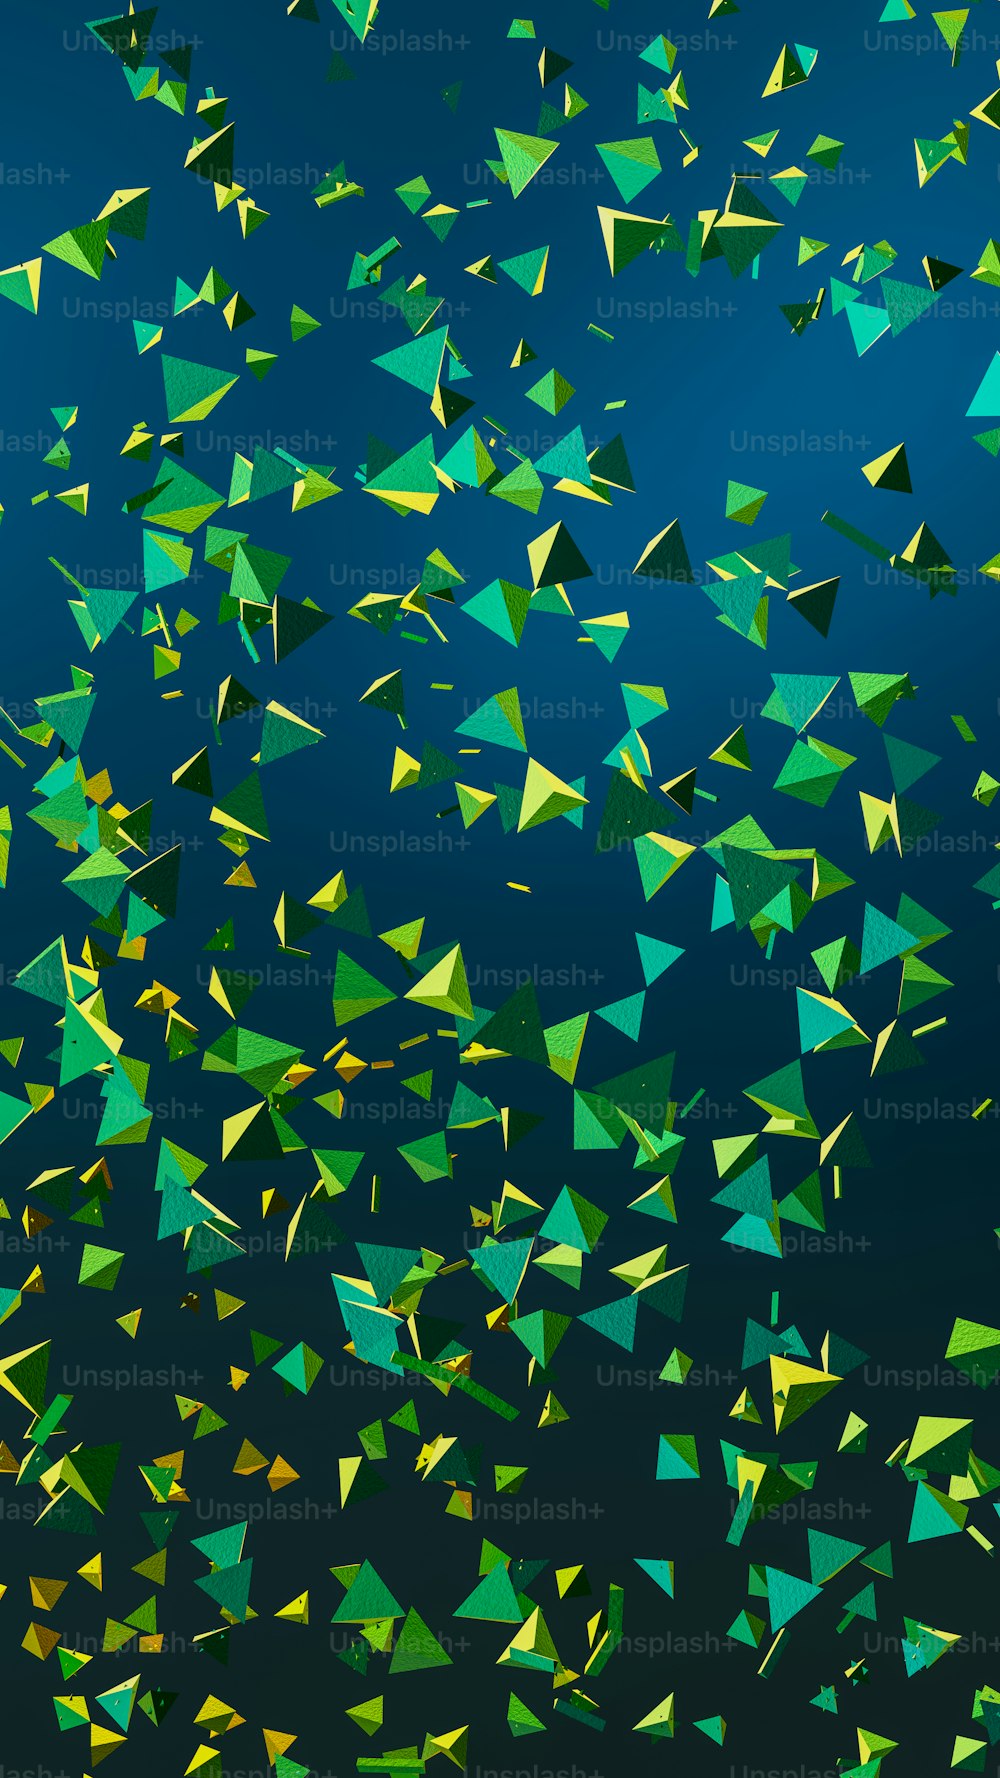 공중에서 날아가는 녹색과 노란색 삼각형 그룹